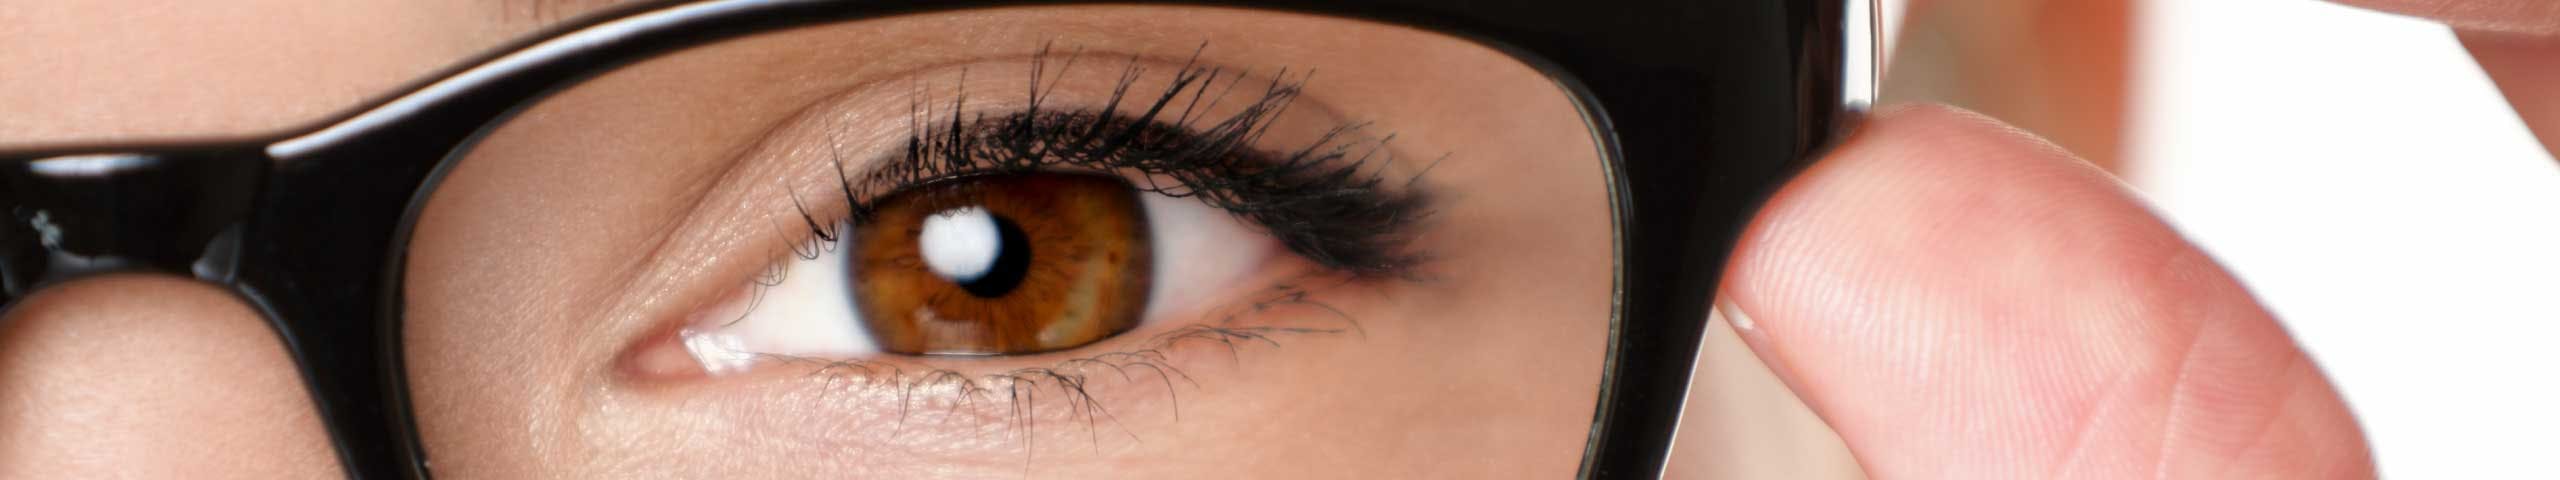 Eye care image